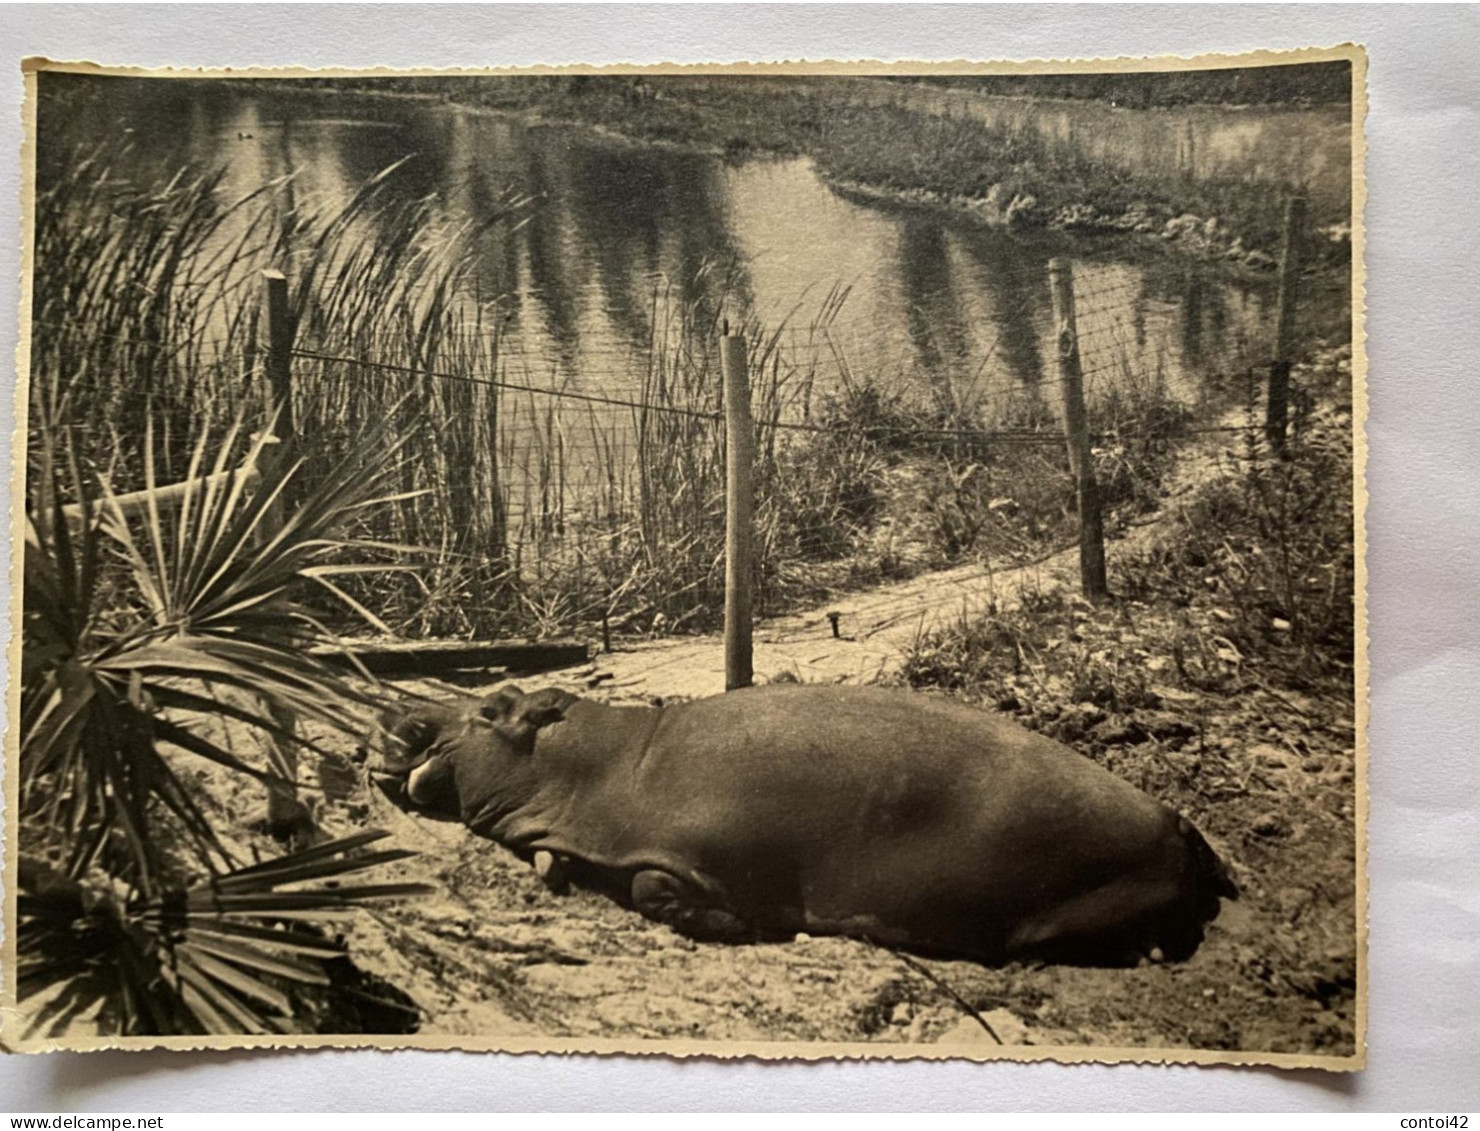 SILVER SPRINGS FLORIDE PHOTOGRAPHIE ORIGINALE VINTAGE 1940 ANIMAUX HIPPOPOTAME ETATS-UNIS AMERIQUE - America